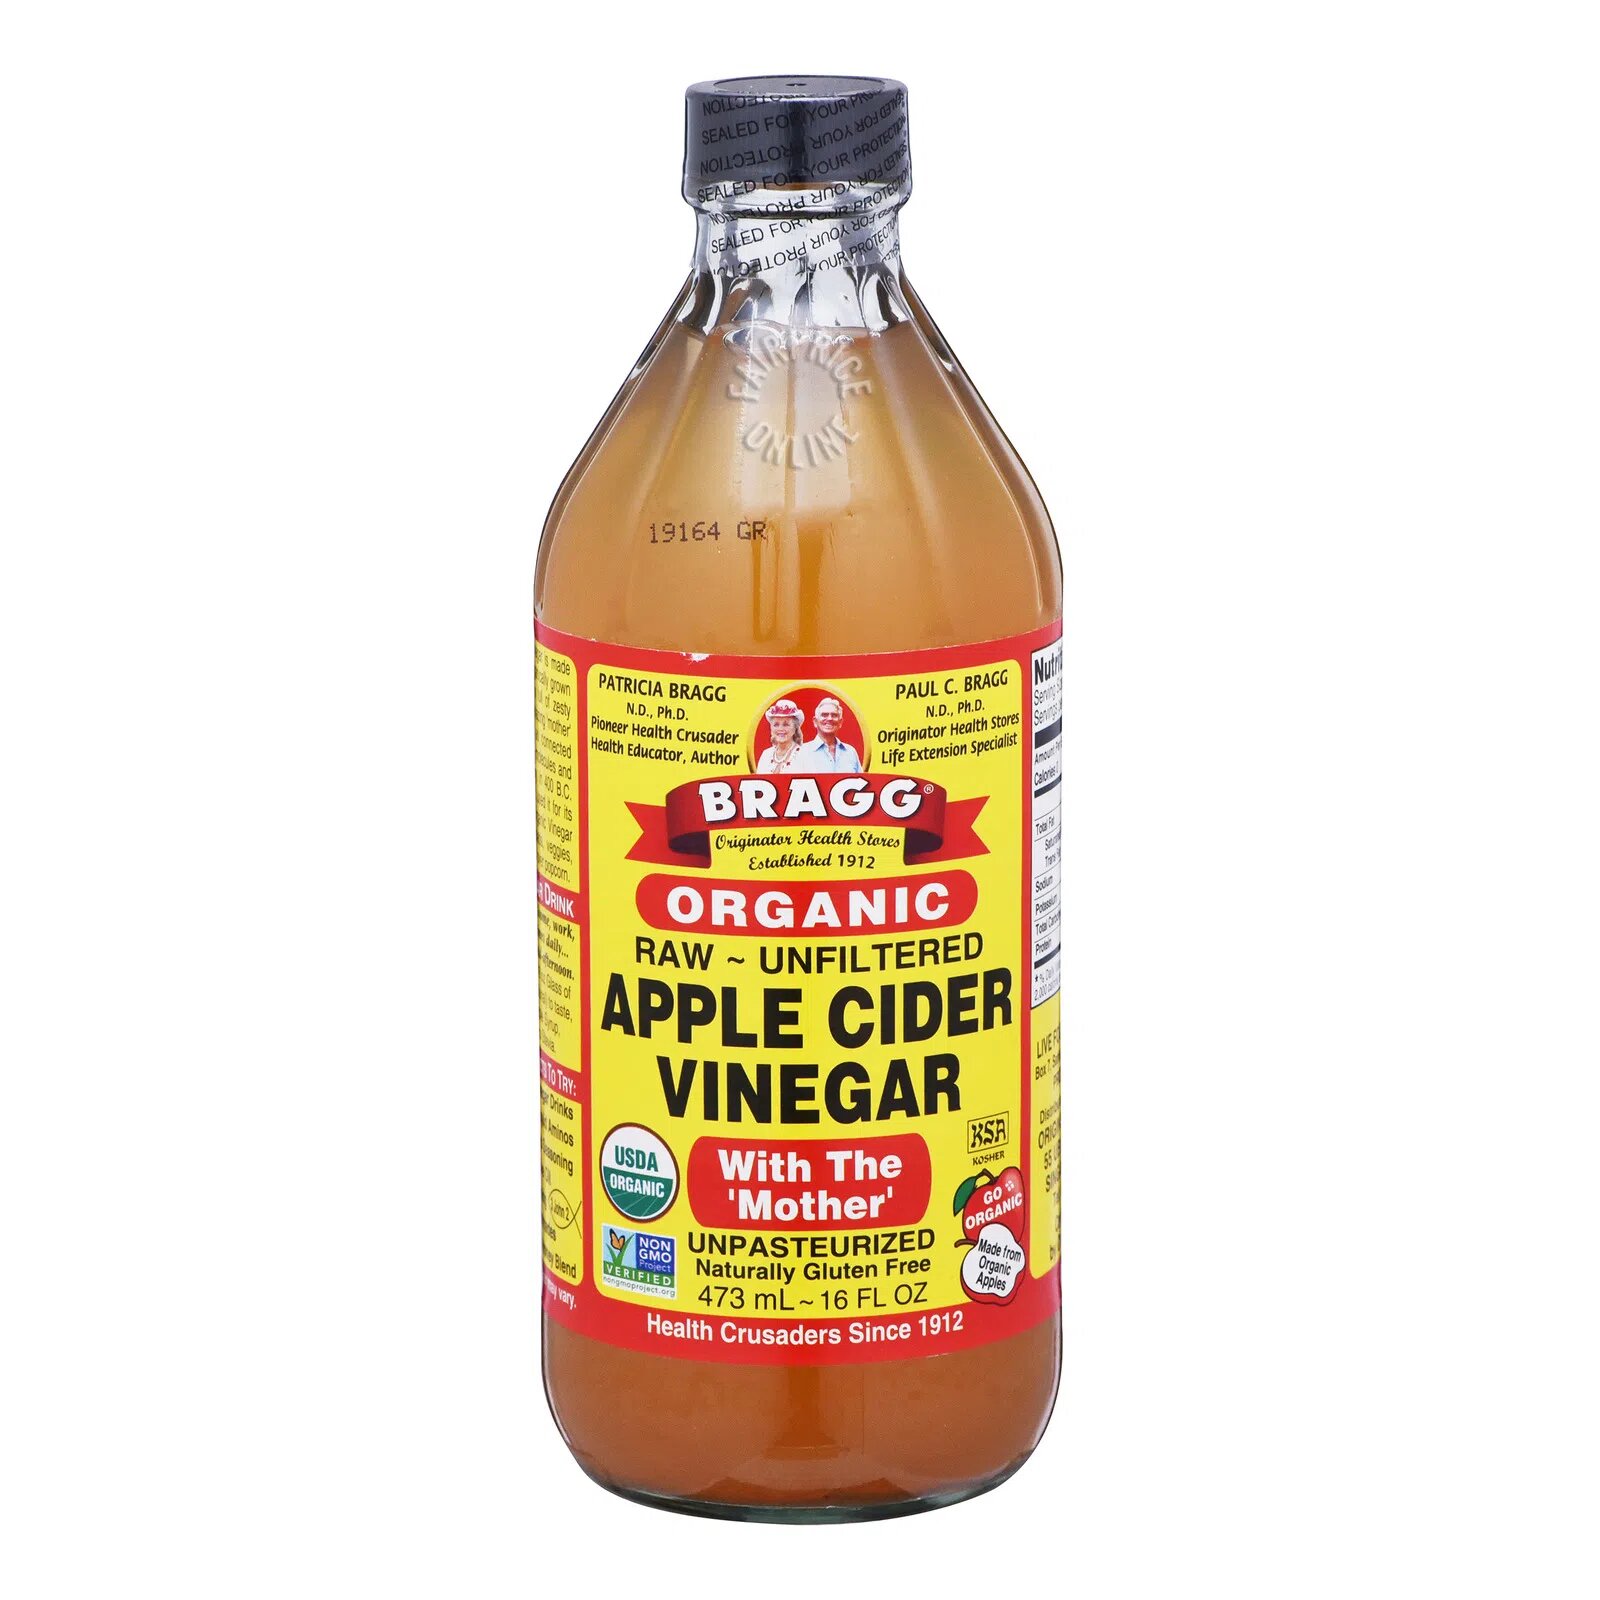 Bragg Organic Apple Cider Vinegar - Original